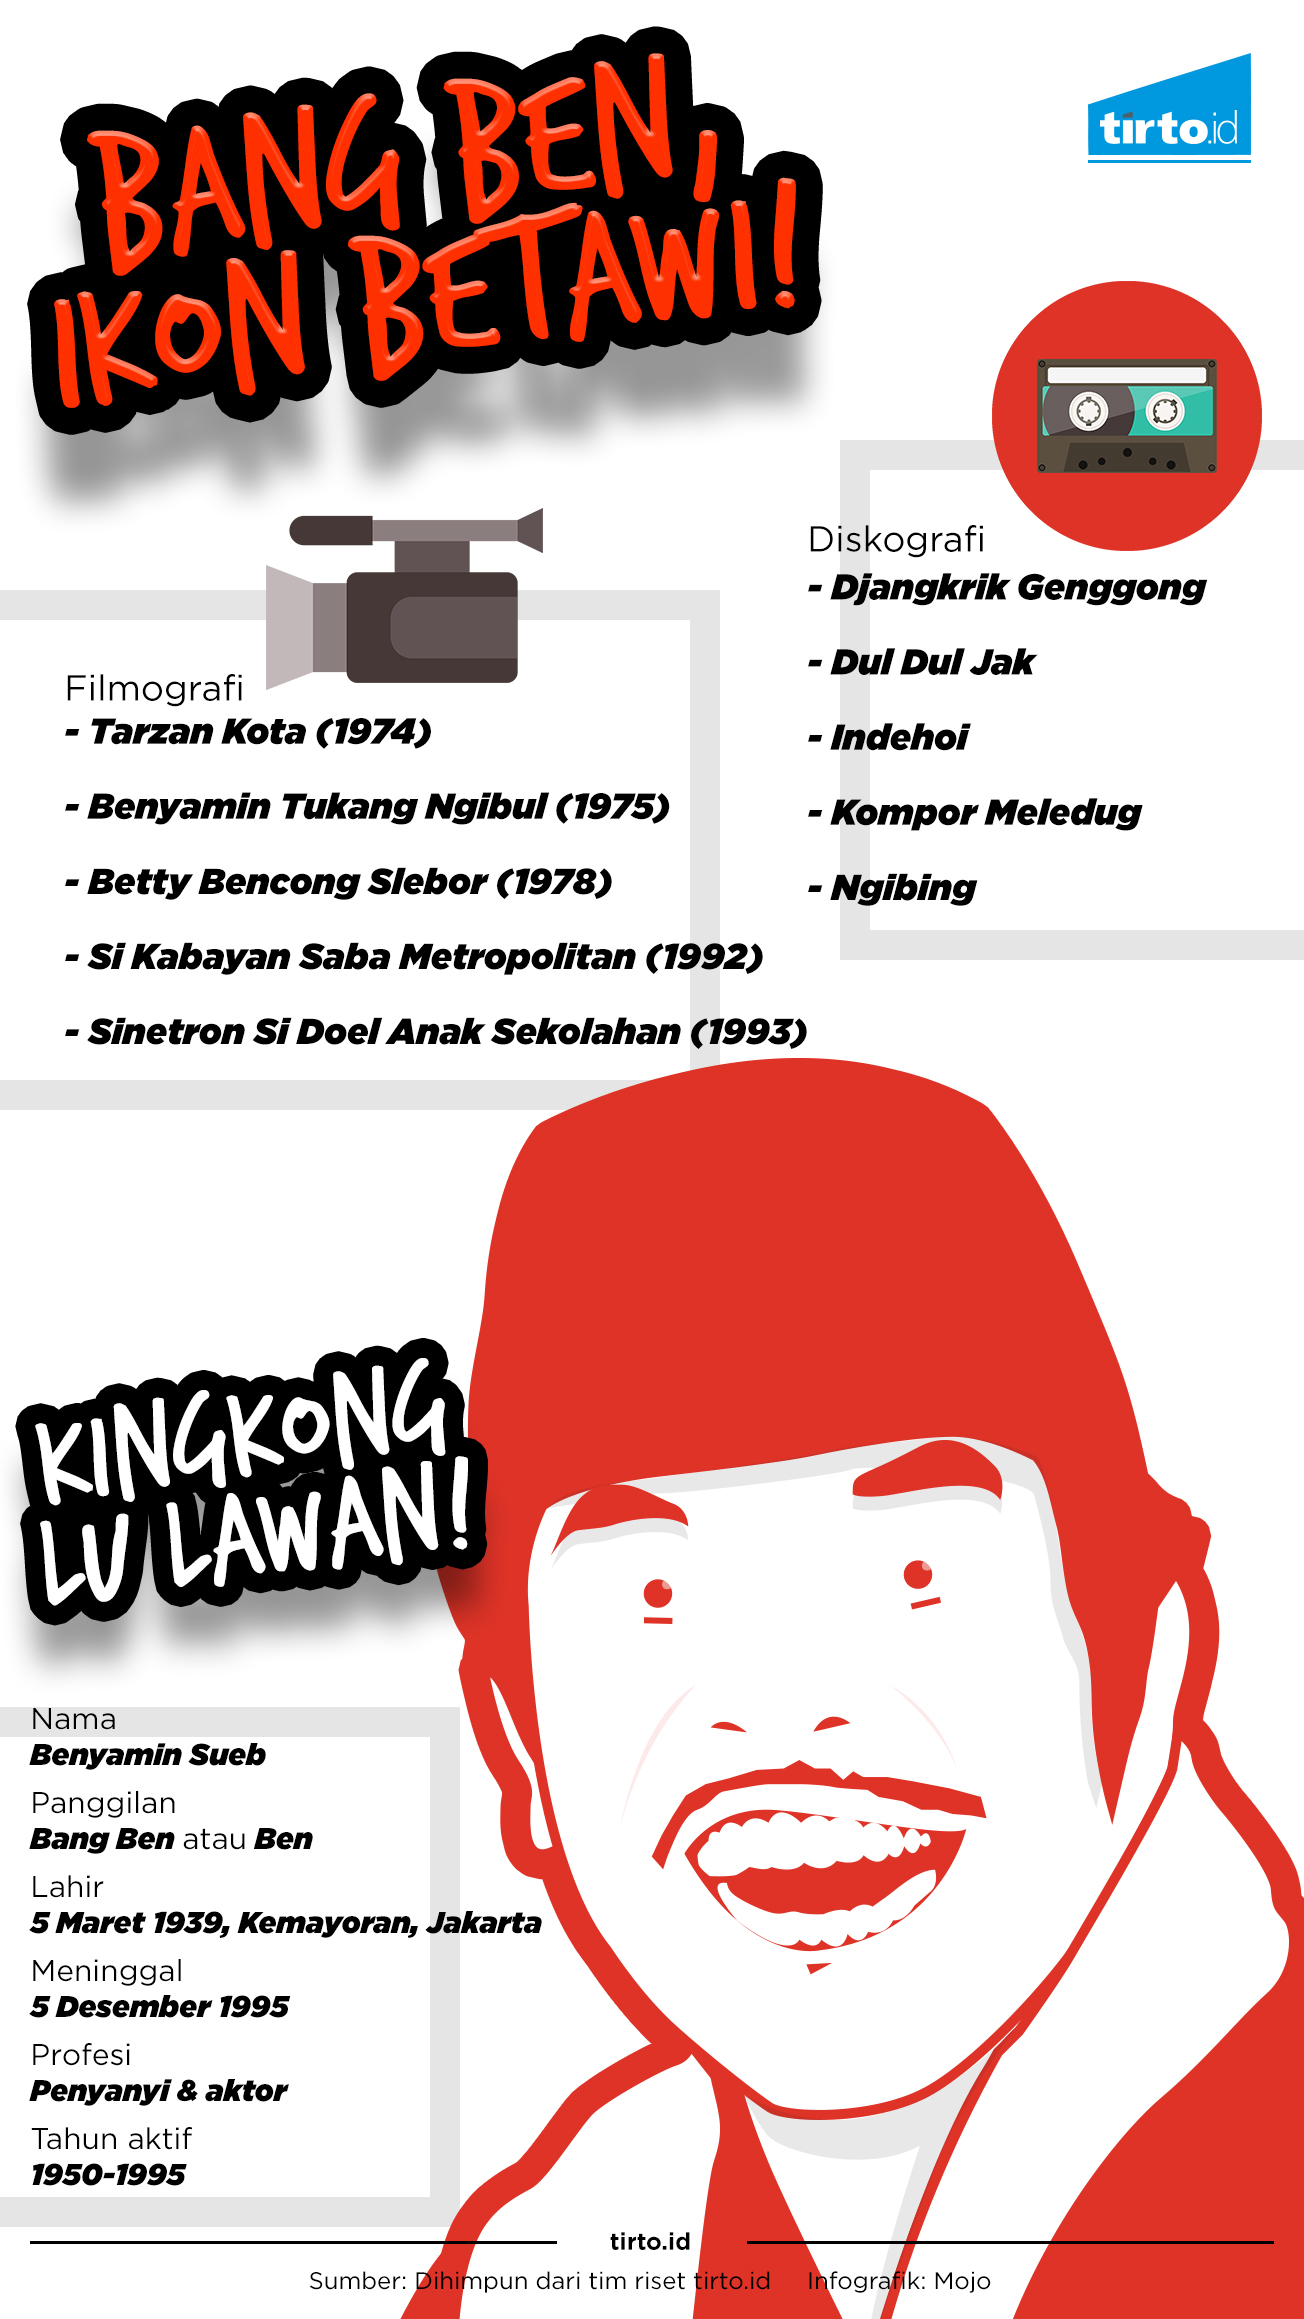 Infografik Bang Ben Ikon Betawi